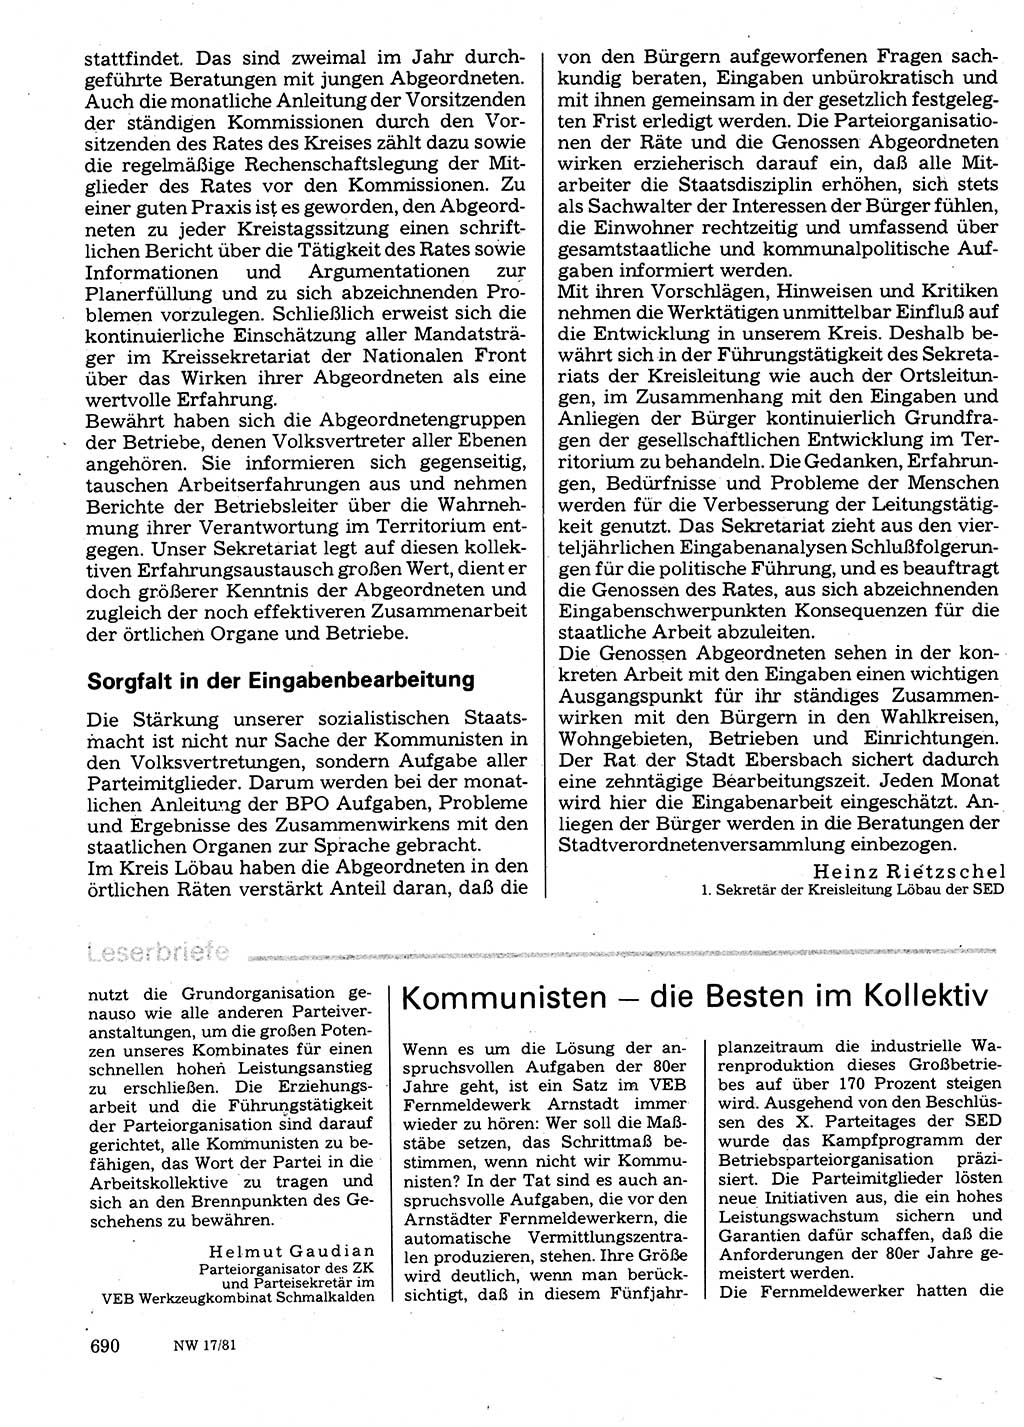 Neuer Weg (NW), Organ des Zentralkomitees (ZK) der SED (Sozialistische Einheitspartei Deutschlands) für Fragen des Parteilebens, 36. Jahrgang [Deutsche Demokratische Republik (DDR)] 1981, Seite 690 (NW ZK SED DDR 1981, S. 690)